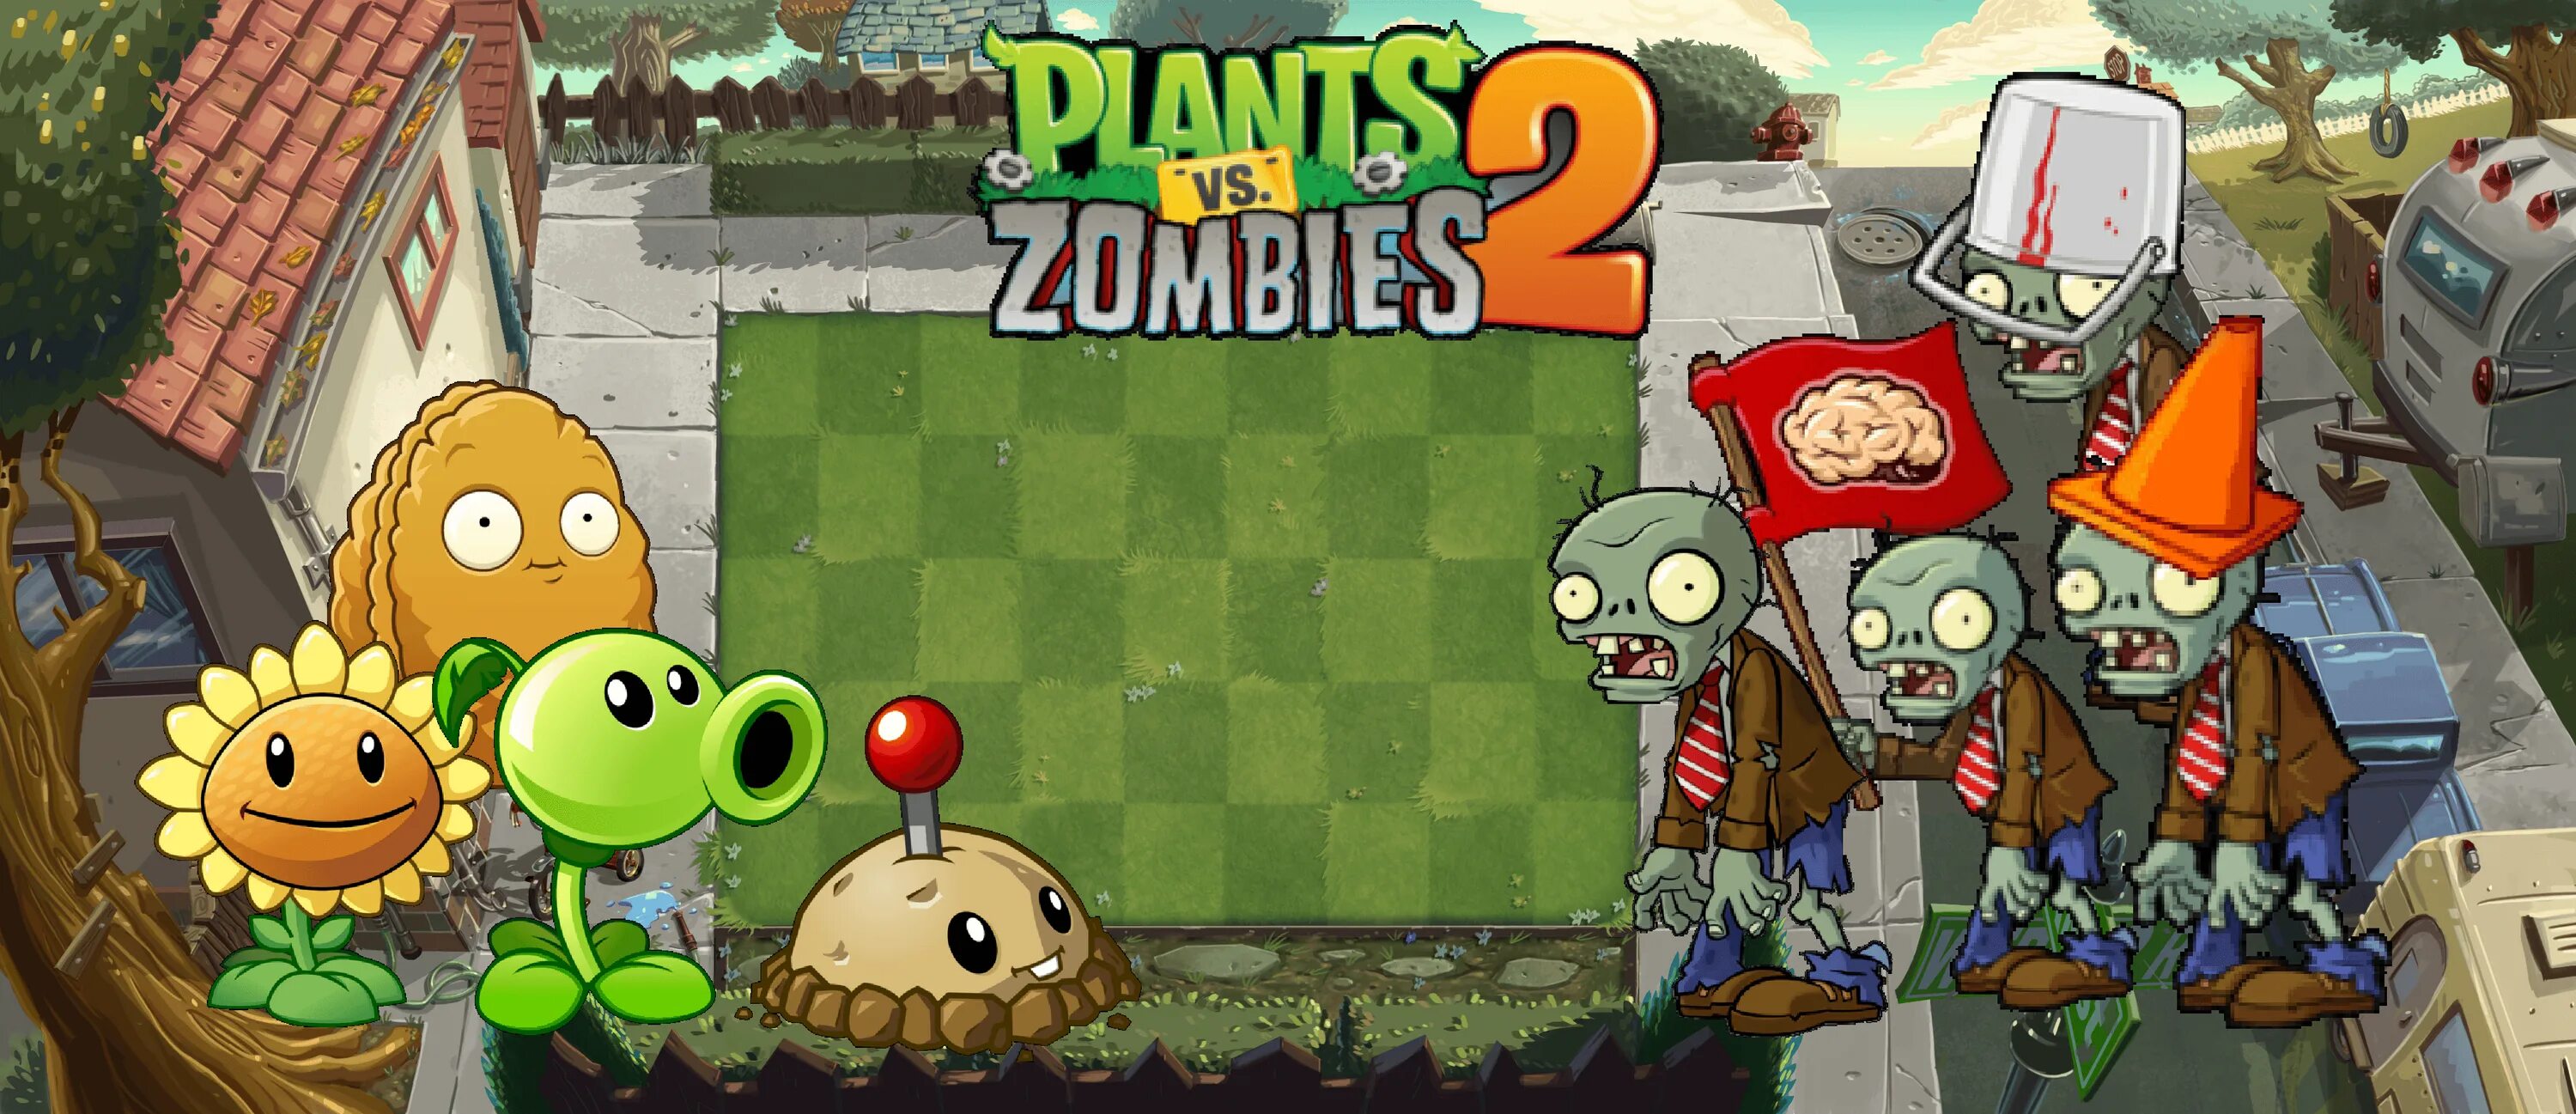 Растения против зомби 1 и 2. Растения против зомби 2 часть игра. Растения против зомби 2 зомби. Растения против зомби растения 1 часть.